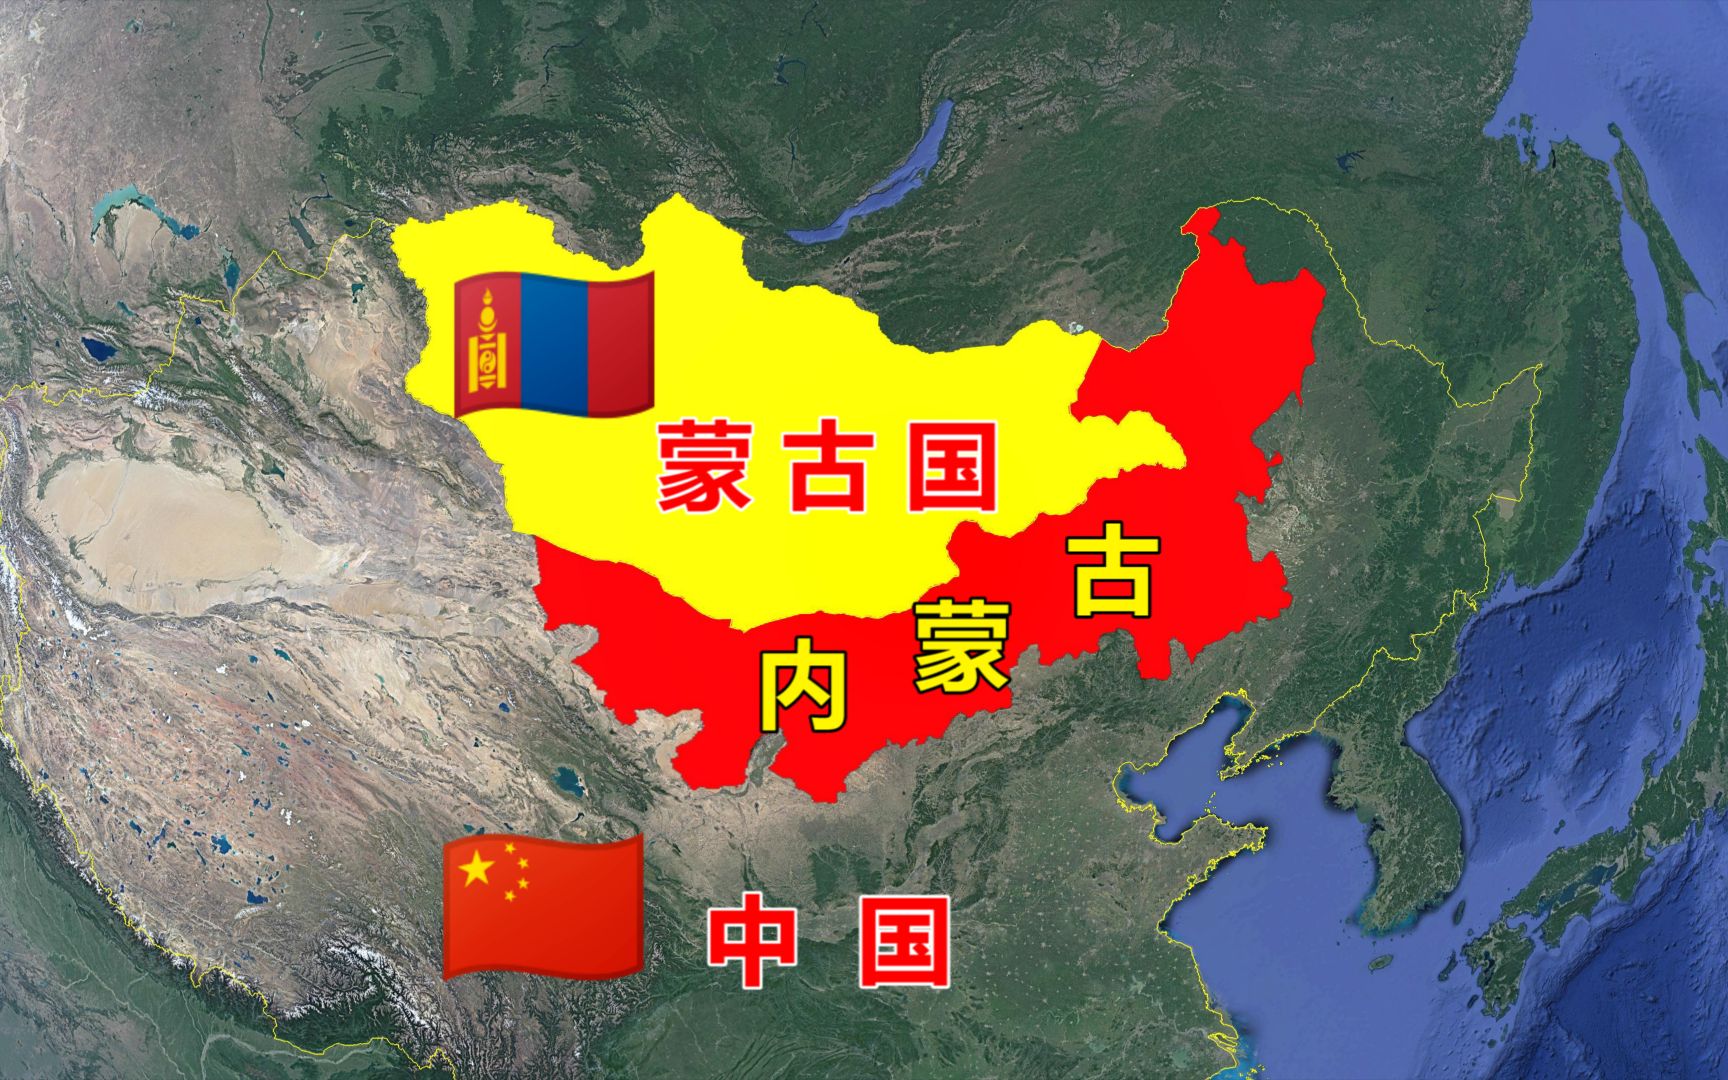 蒙古为什么会分外蒙古和内蒙古?外蒙古又是什么时候独立出去的?